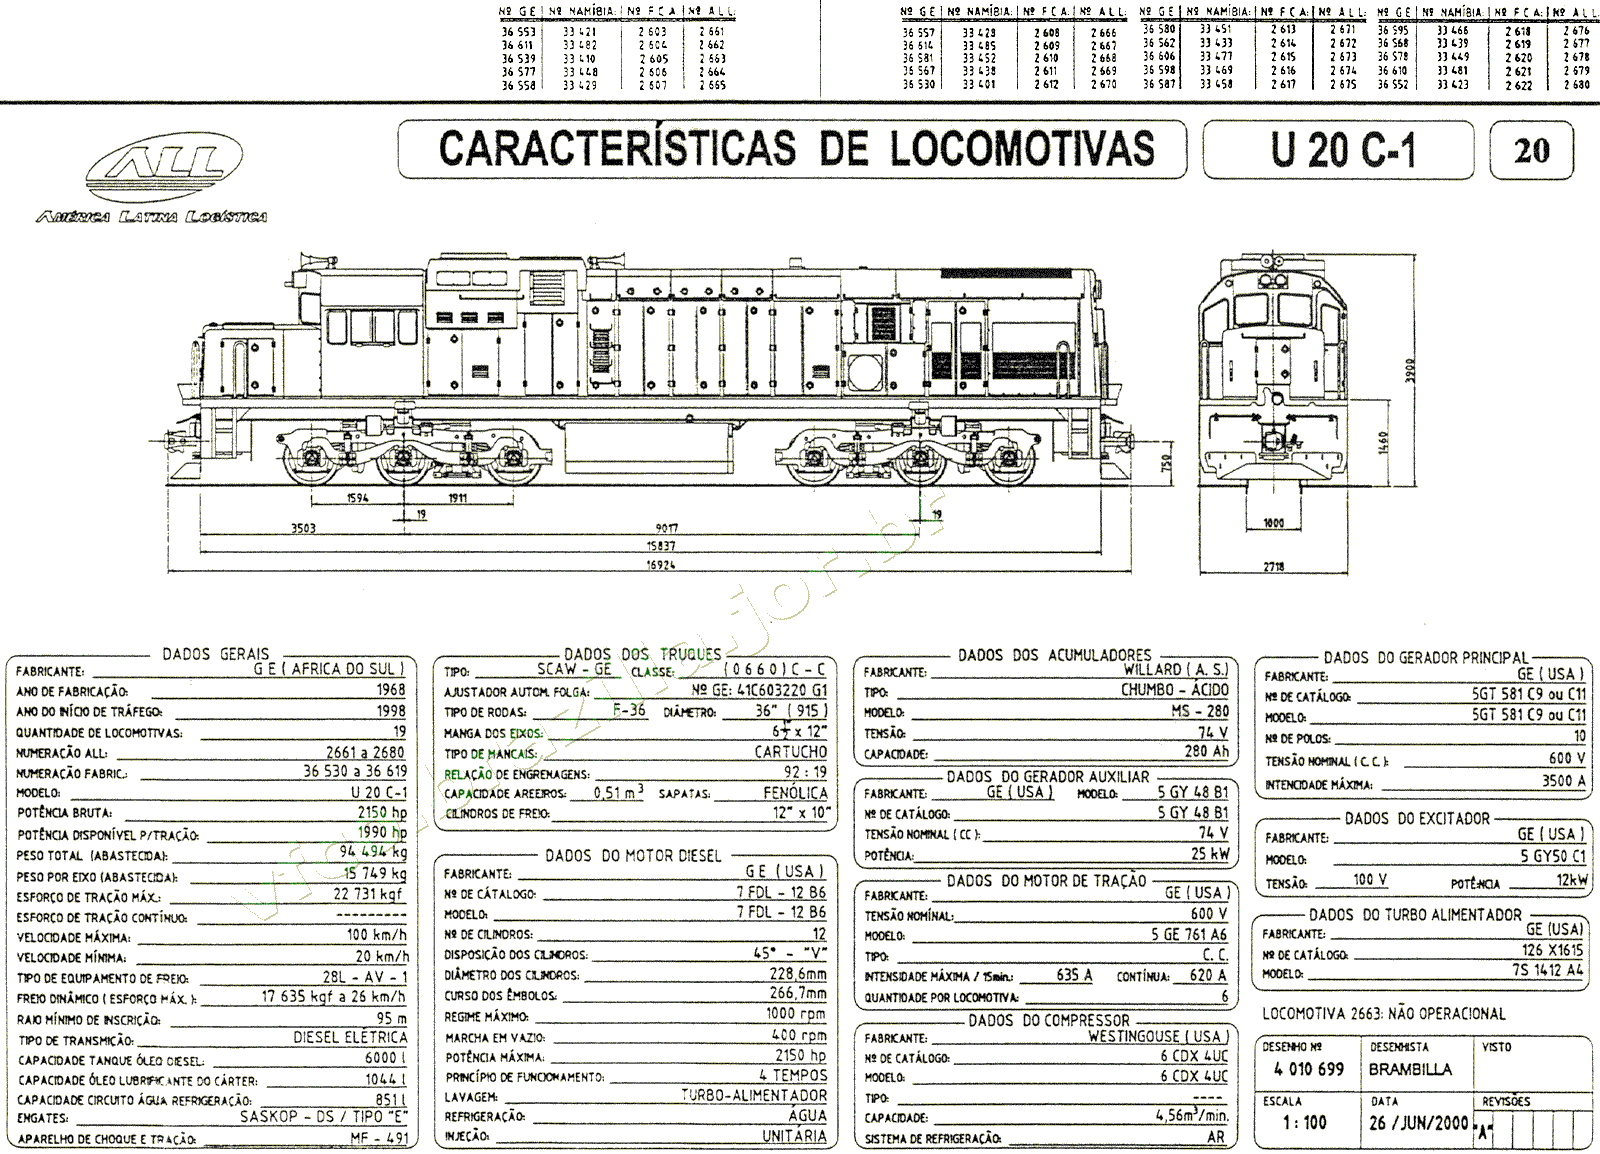 Desenho, medidas e características da Locomotiva U20C1 "Namíbia" da ferrovia ALL